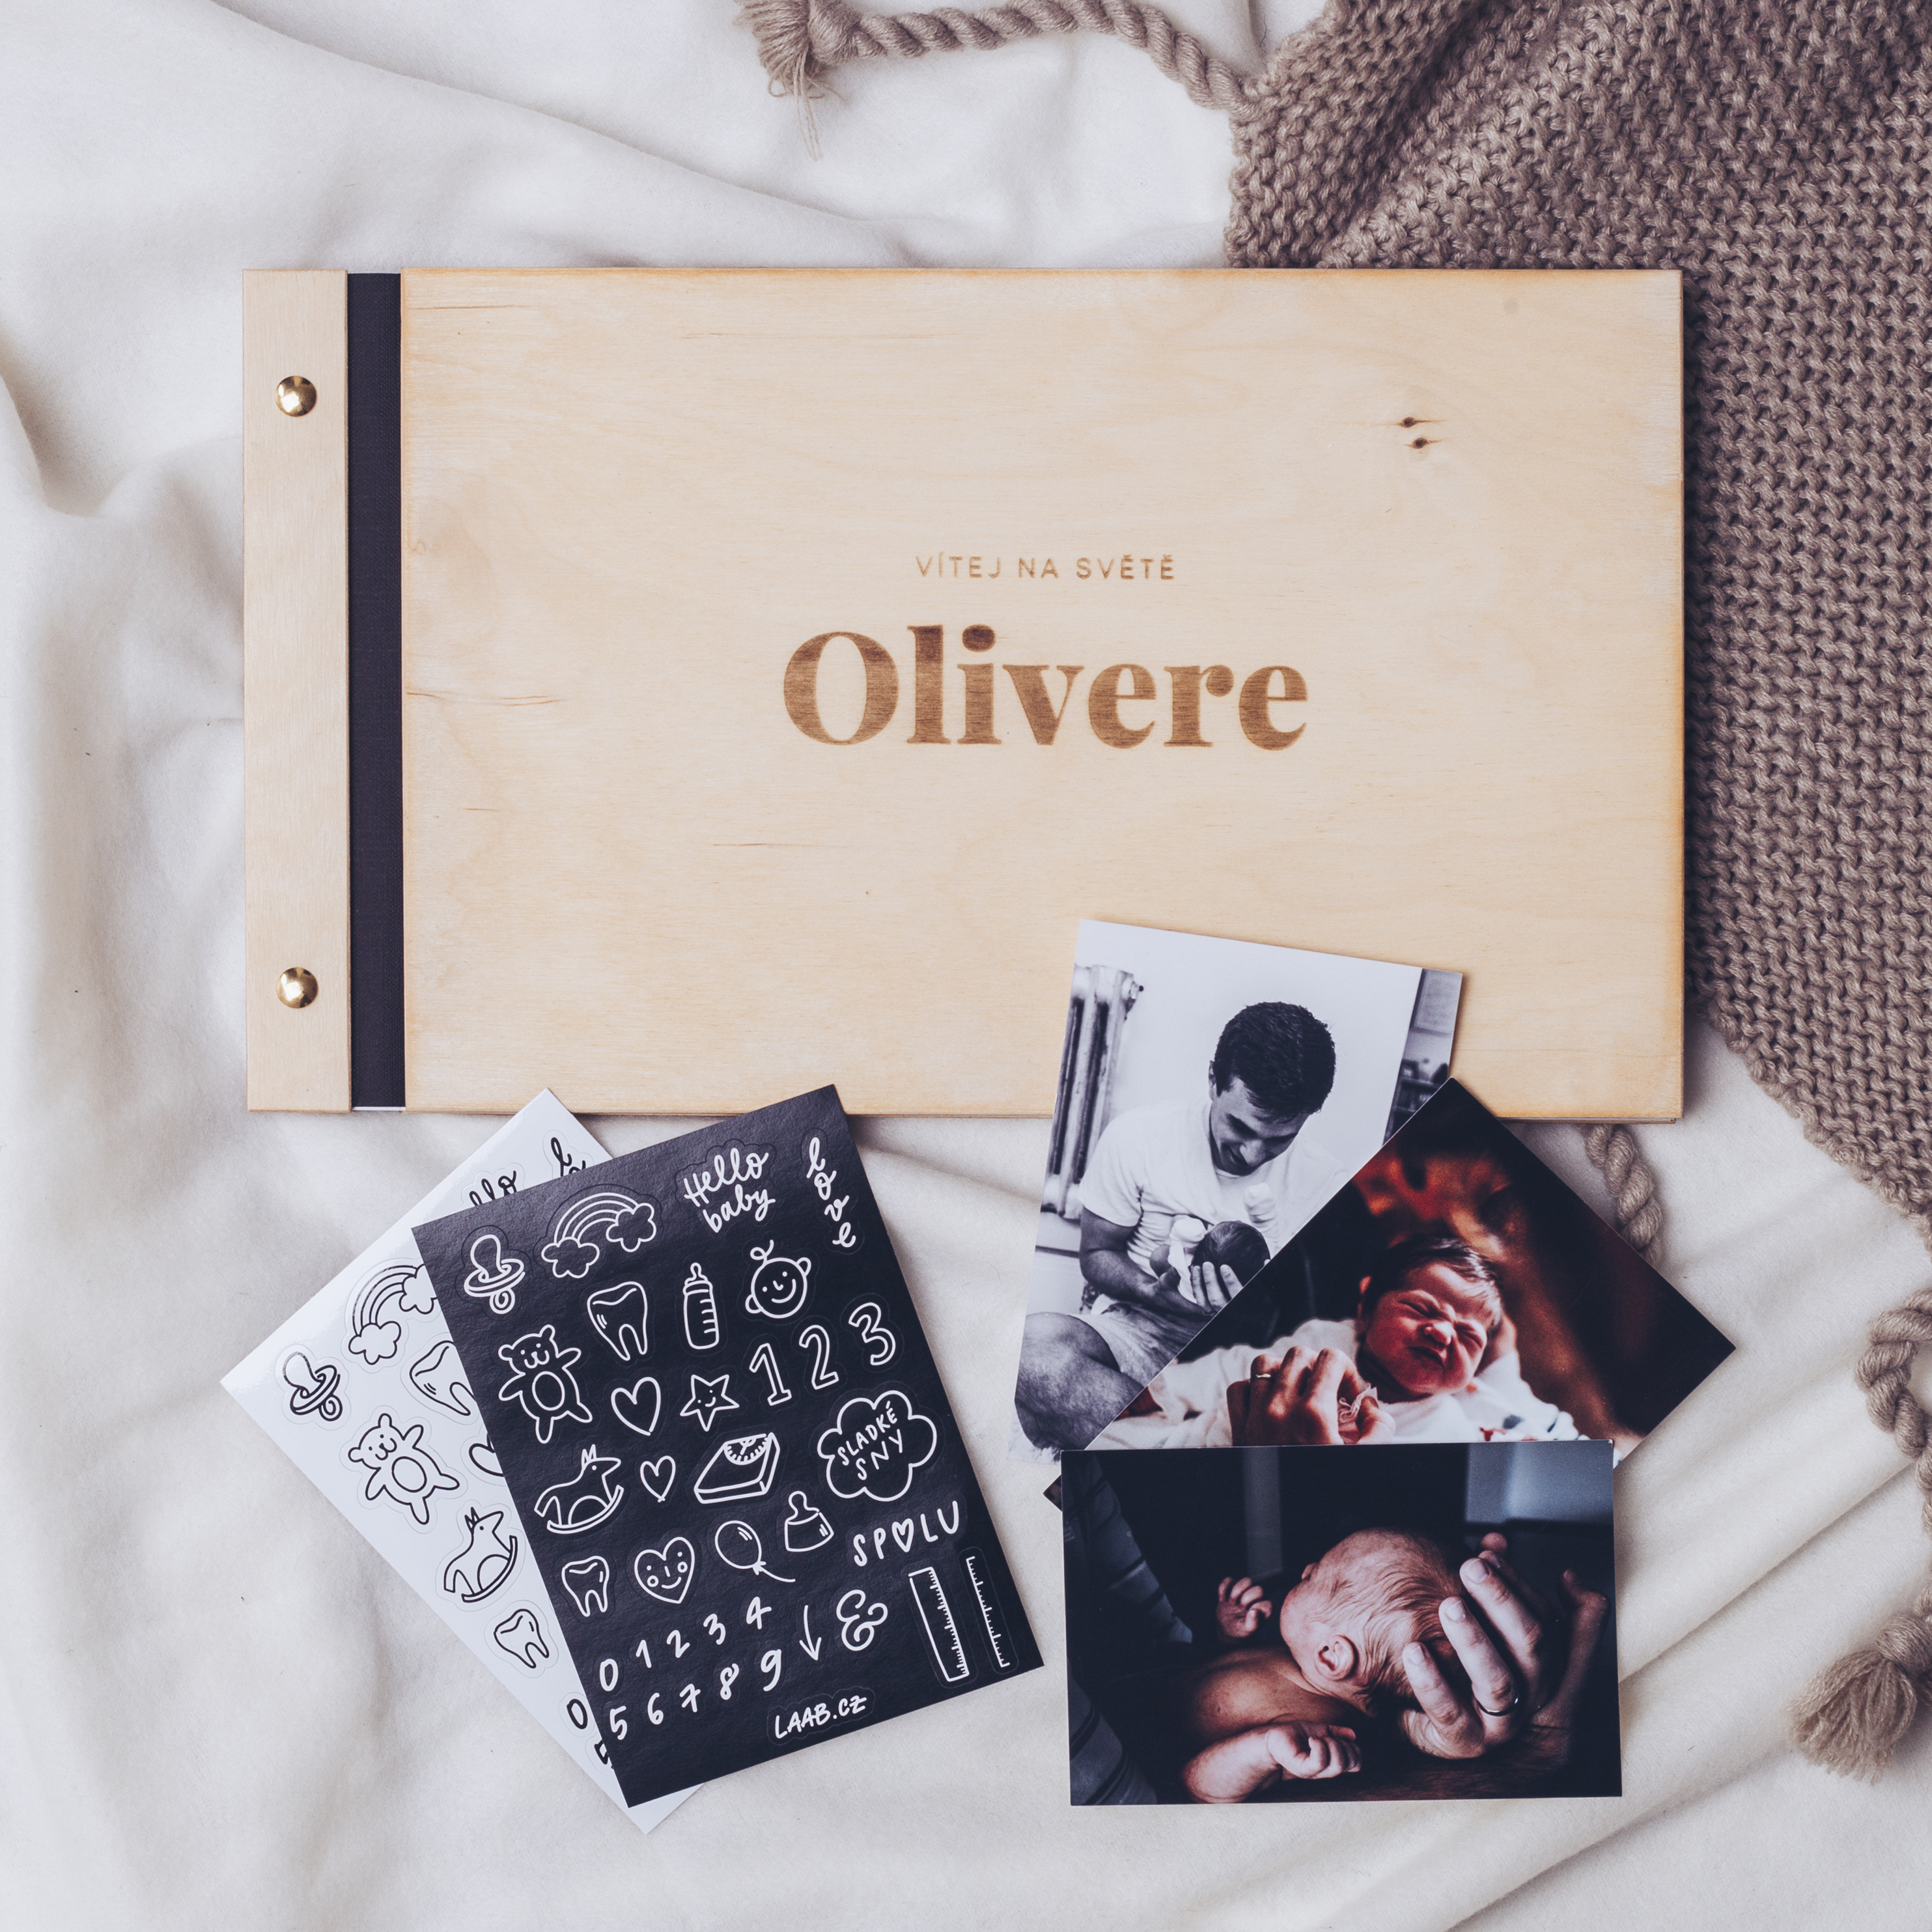 Levně dřevěné fotoalbum Oliver: FORMÁT FOTOALBA čtverec, POČET LISTŮ 30 s prokladovými listy, FORMÁT FOTOALBA na výšku, POČET LISTŮ 25, BARVA LISTŮ černá